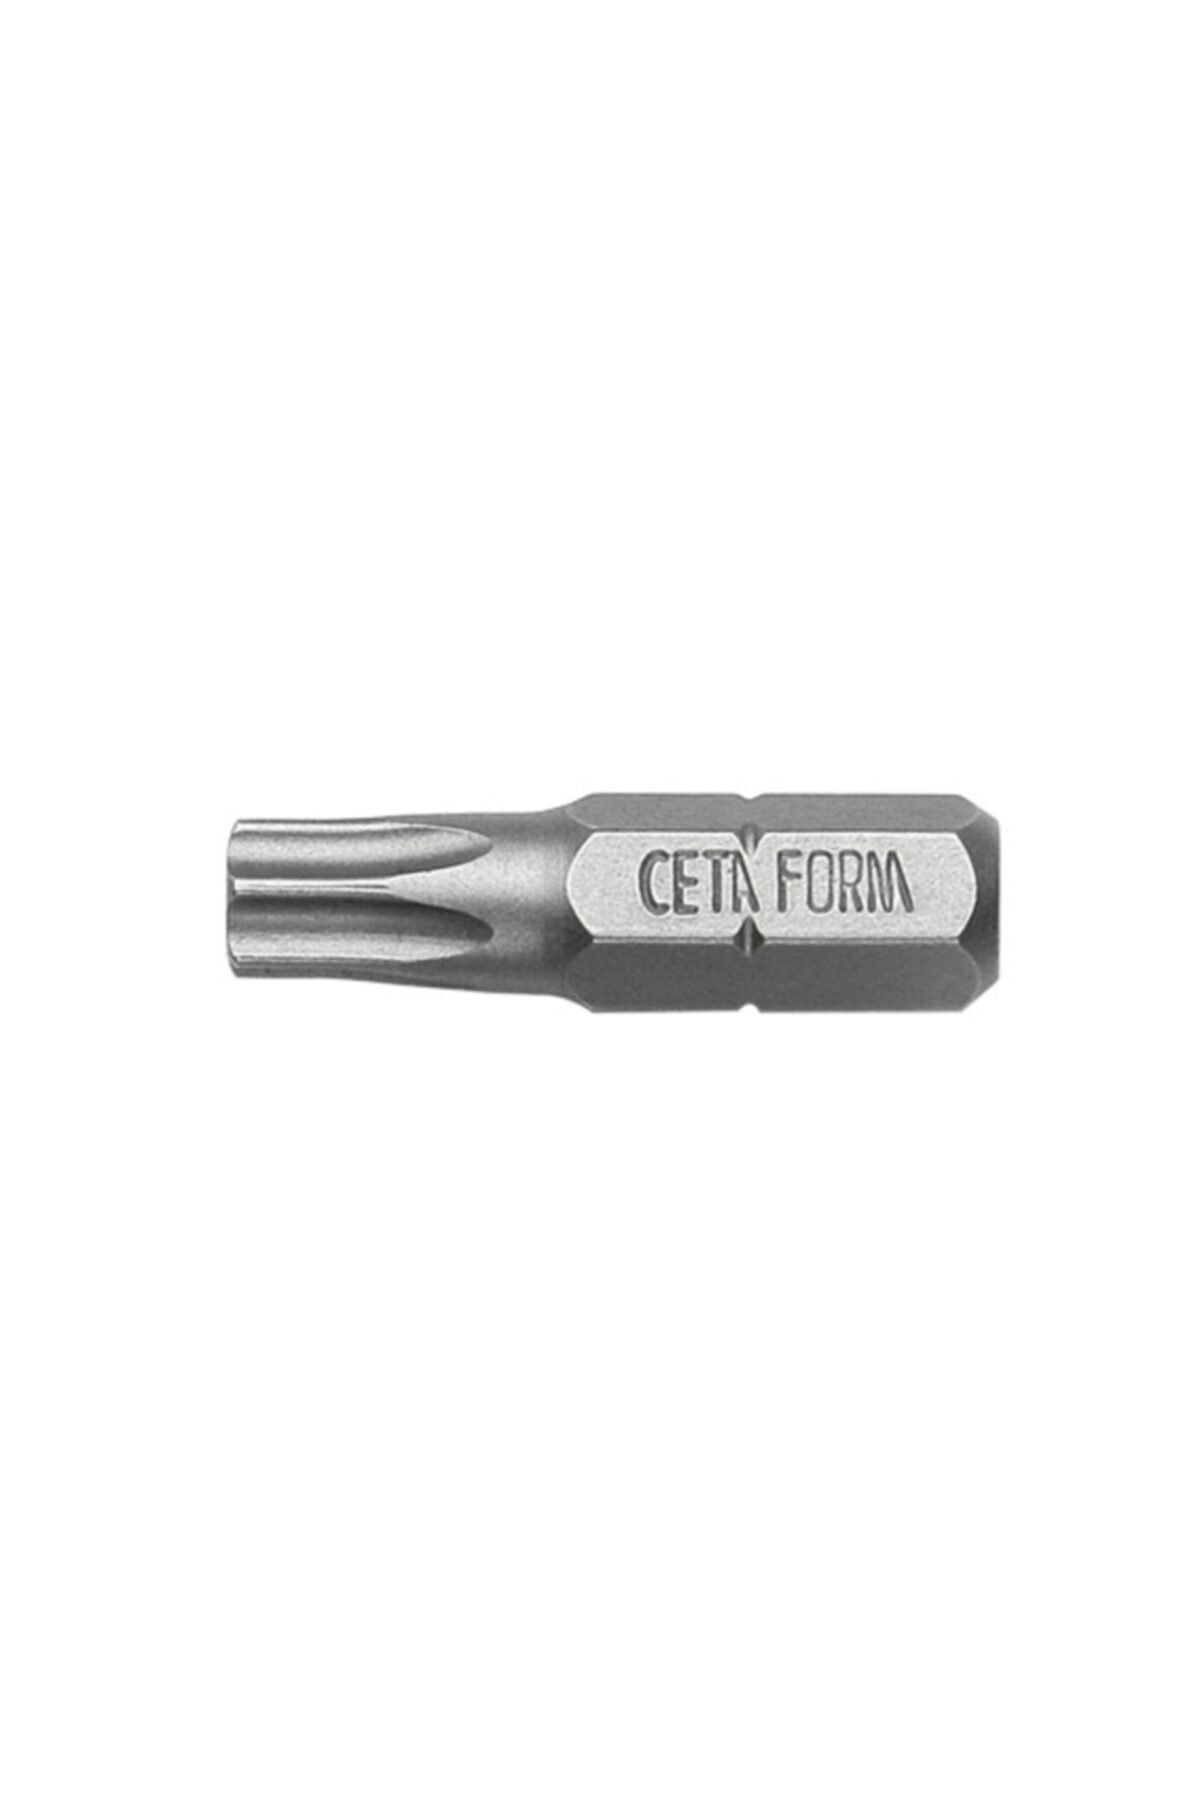 CETA FORM Cb/812 Torx Bits Uç T40x25 Mm